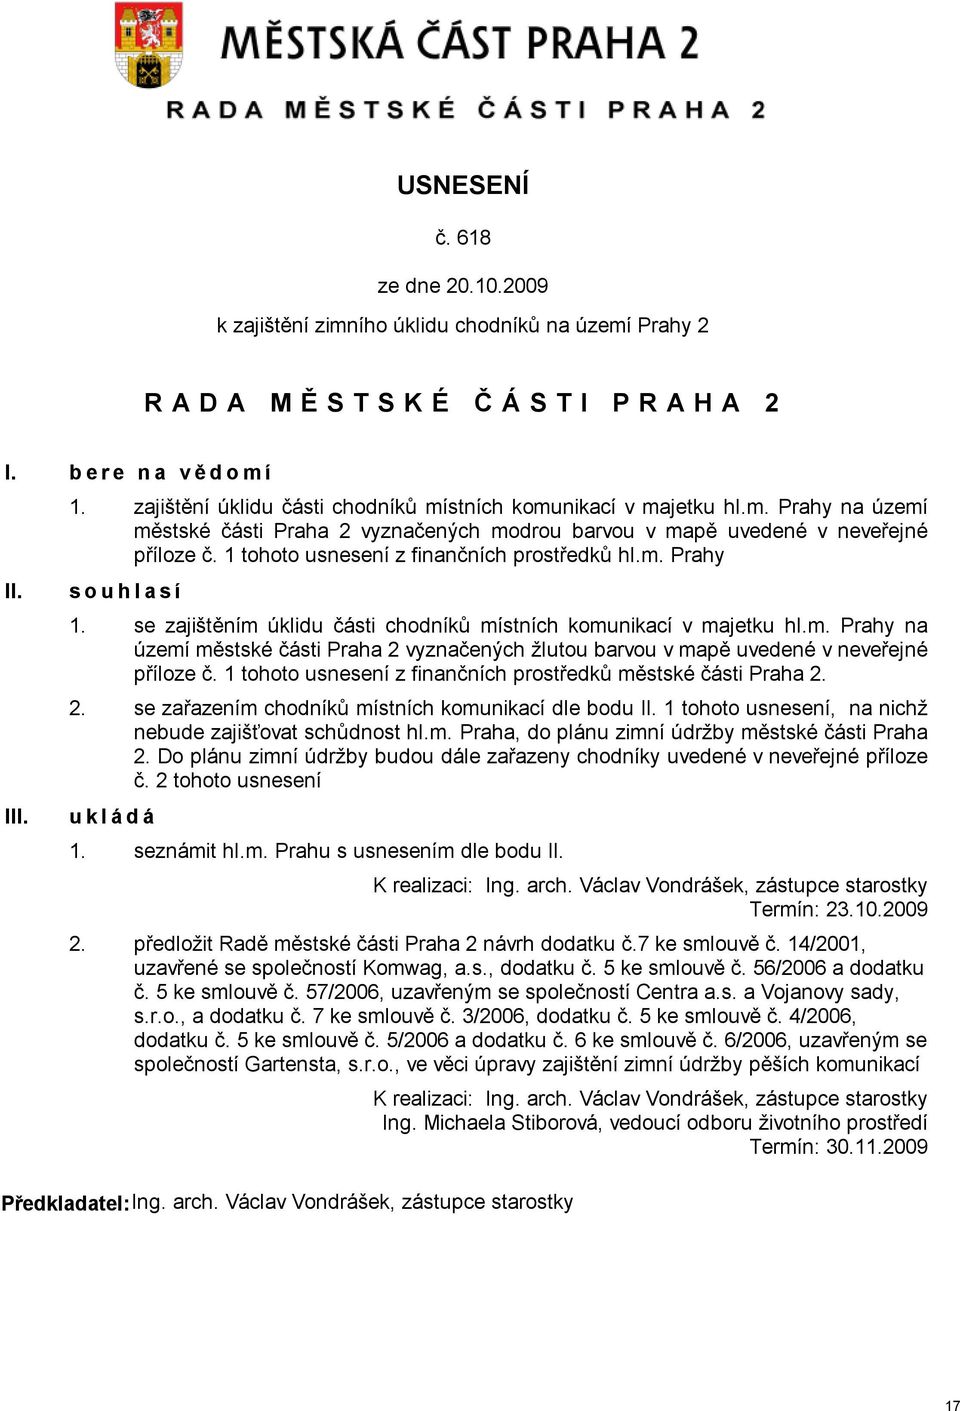 1 tohoto usnesení z finančních prostředků městské části Praha 2. 2. se zařazením chodníků místních komunikací dle bodu 1 tohoto usnesení, na nichž nebude zajišťovat schůdnost hl.m. Praha, do plánu zimní údržby městské části Praha 2.